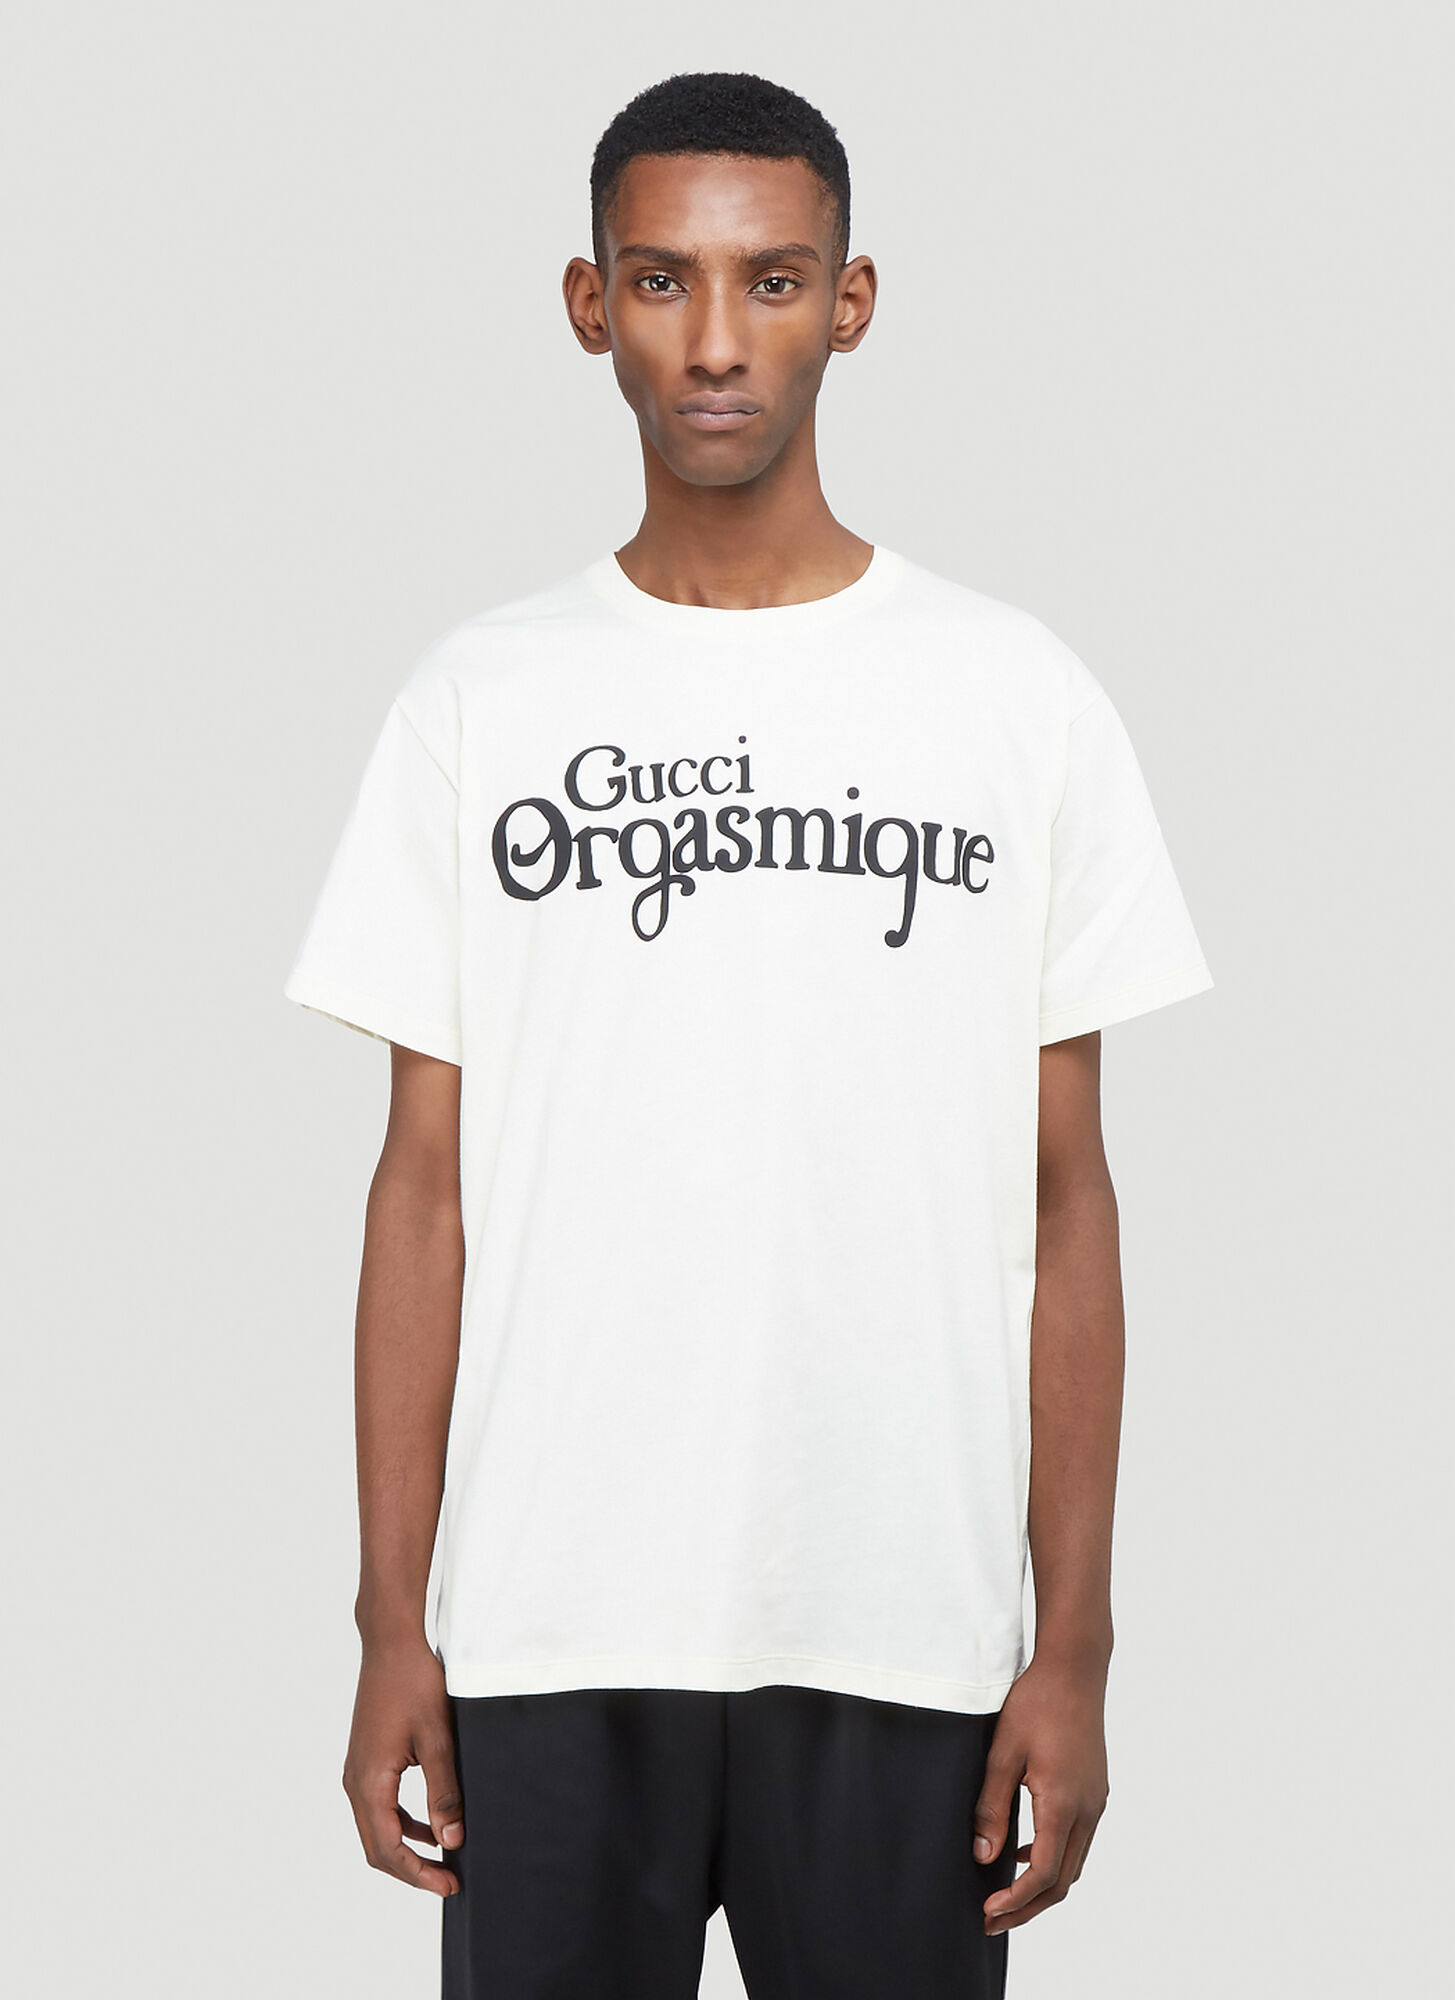 Gucci Orgasmique T-Shirt in White size L | The Fashionisto